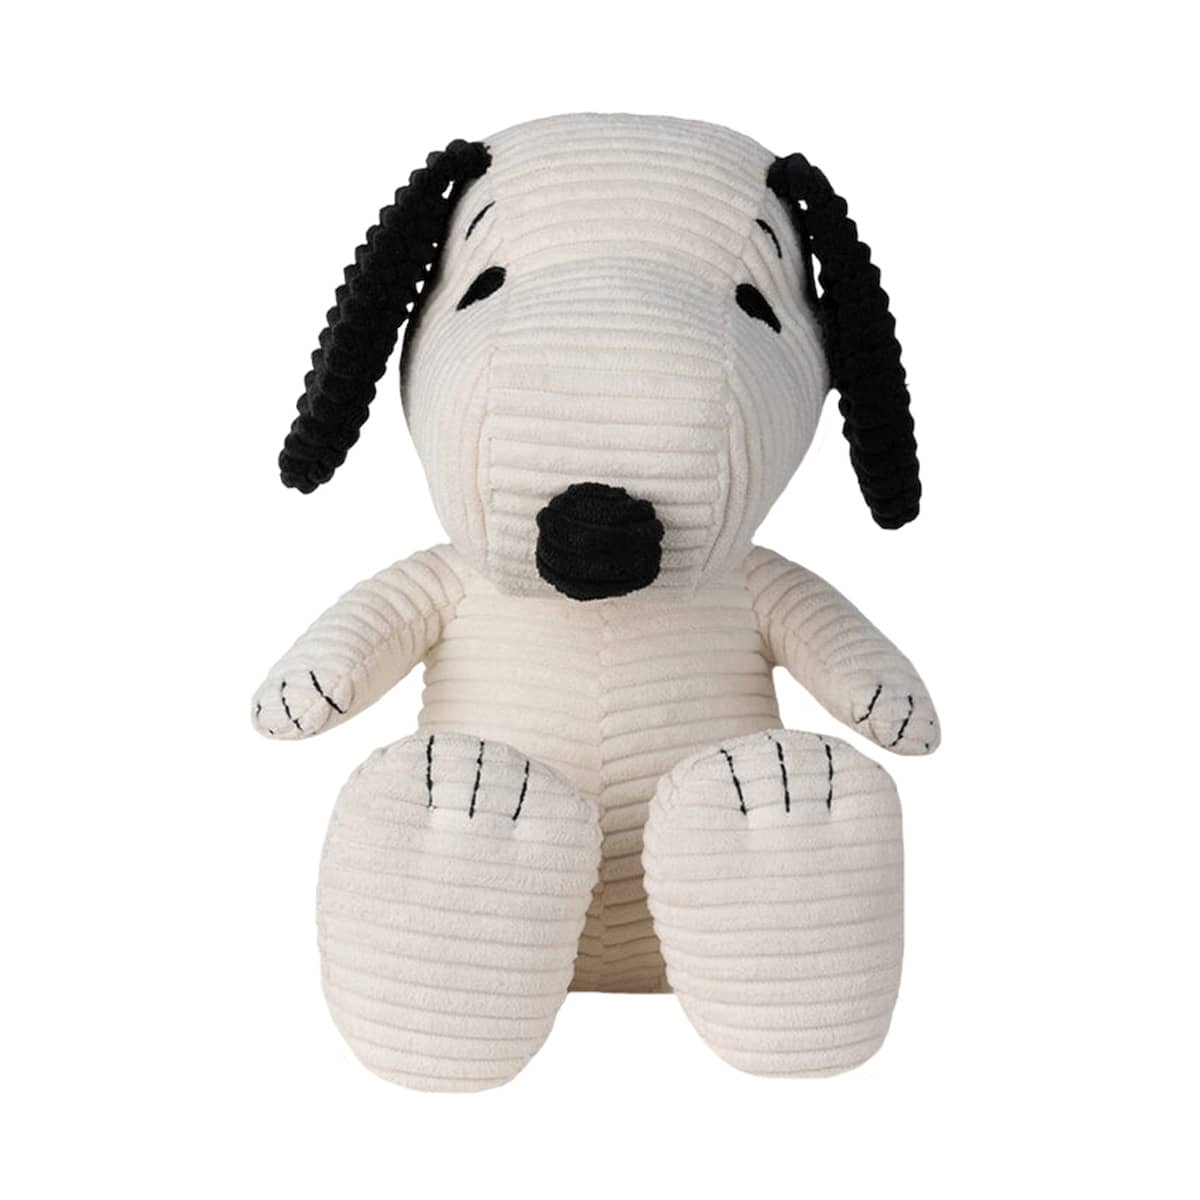 Bon Bon Toys Snoopy Sitting Corduroy Plush Toy in Gift Box